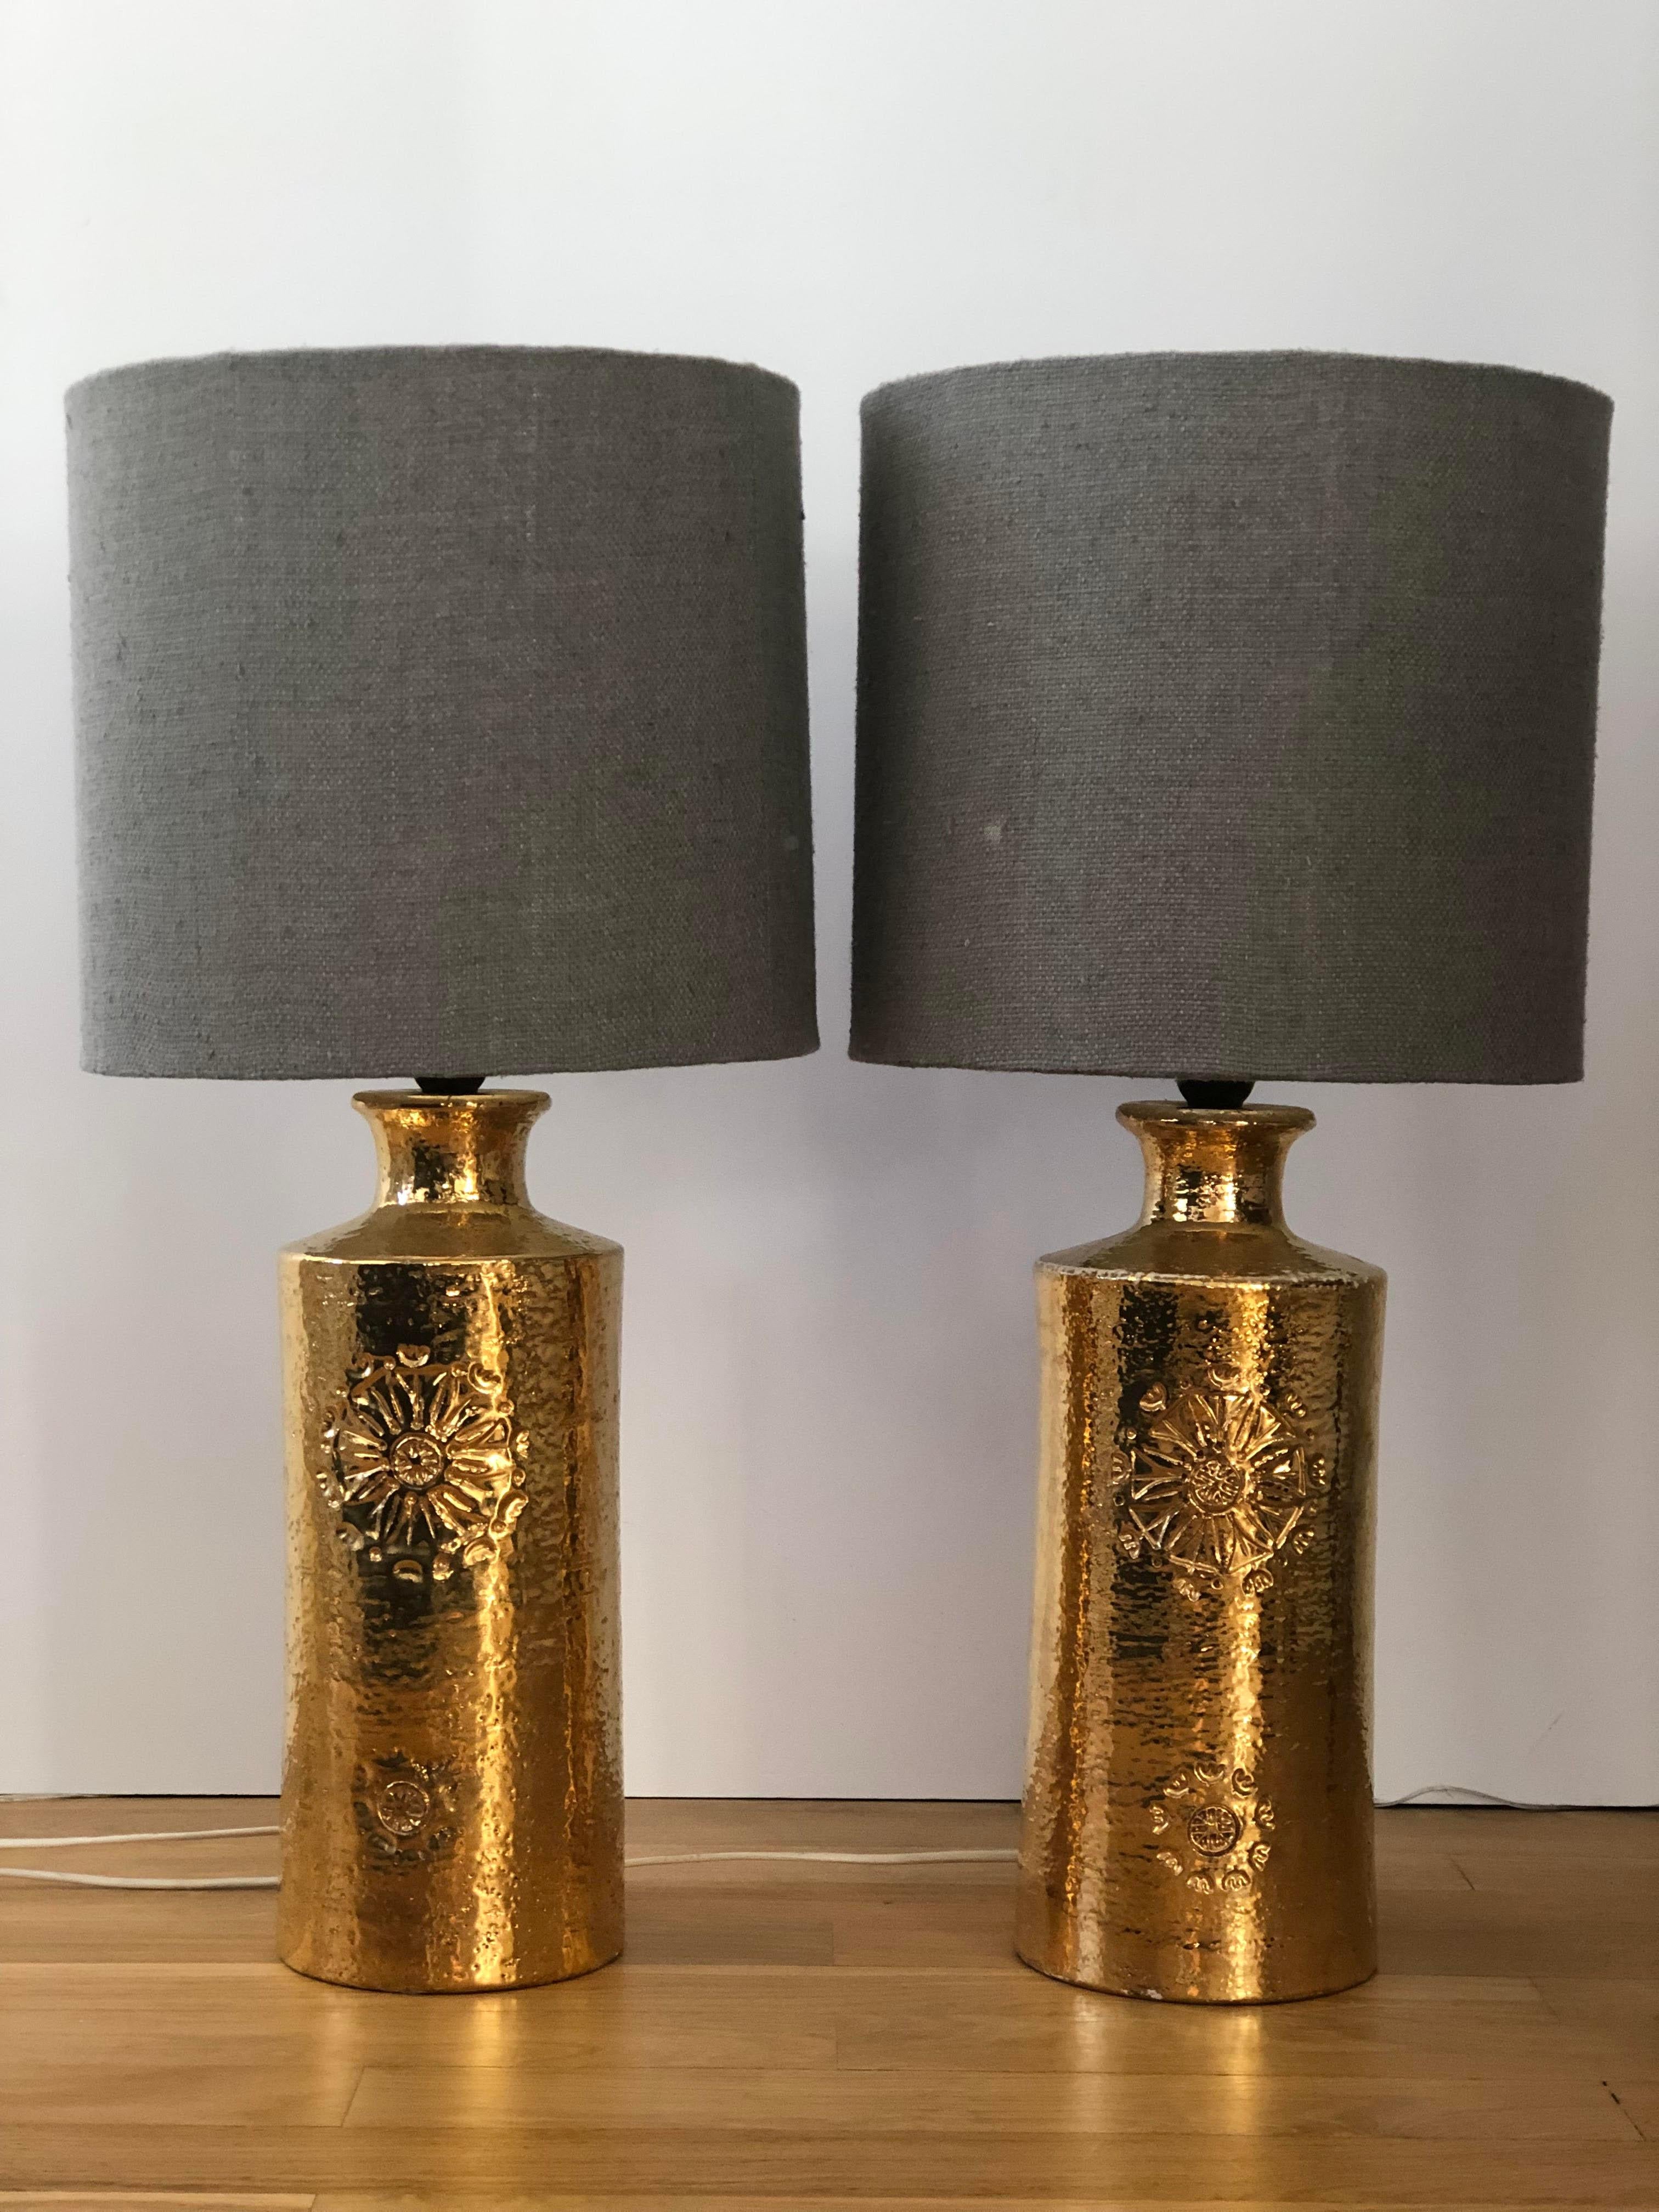 Paire de lampes de table dorées conçues par Aldo Londi pour Bitossi, Italie et fabriquées par Bergboms, Suède. Fabriqué en céramique, émaillé or, avec une fleur incisée à la main sur le devant.
Design/One moderne du milieu du siècle, production